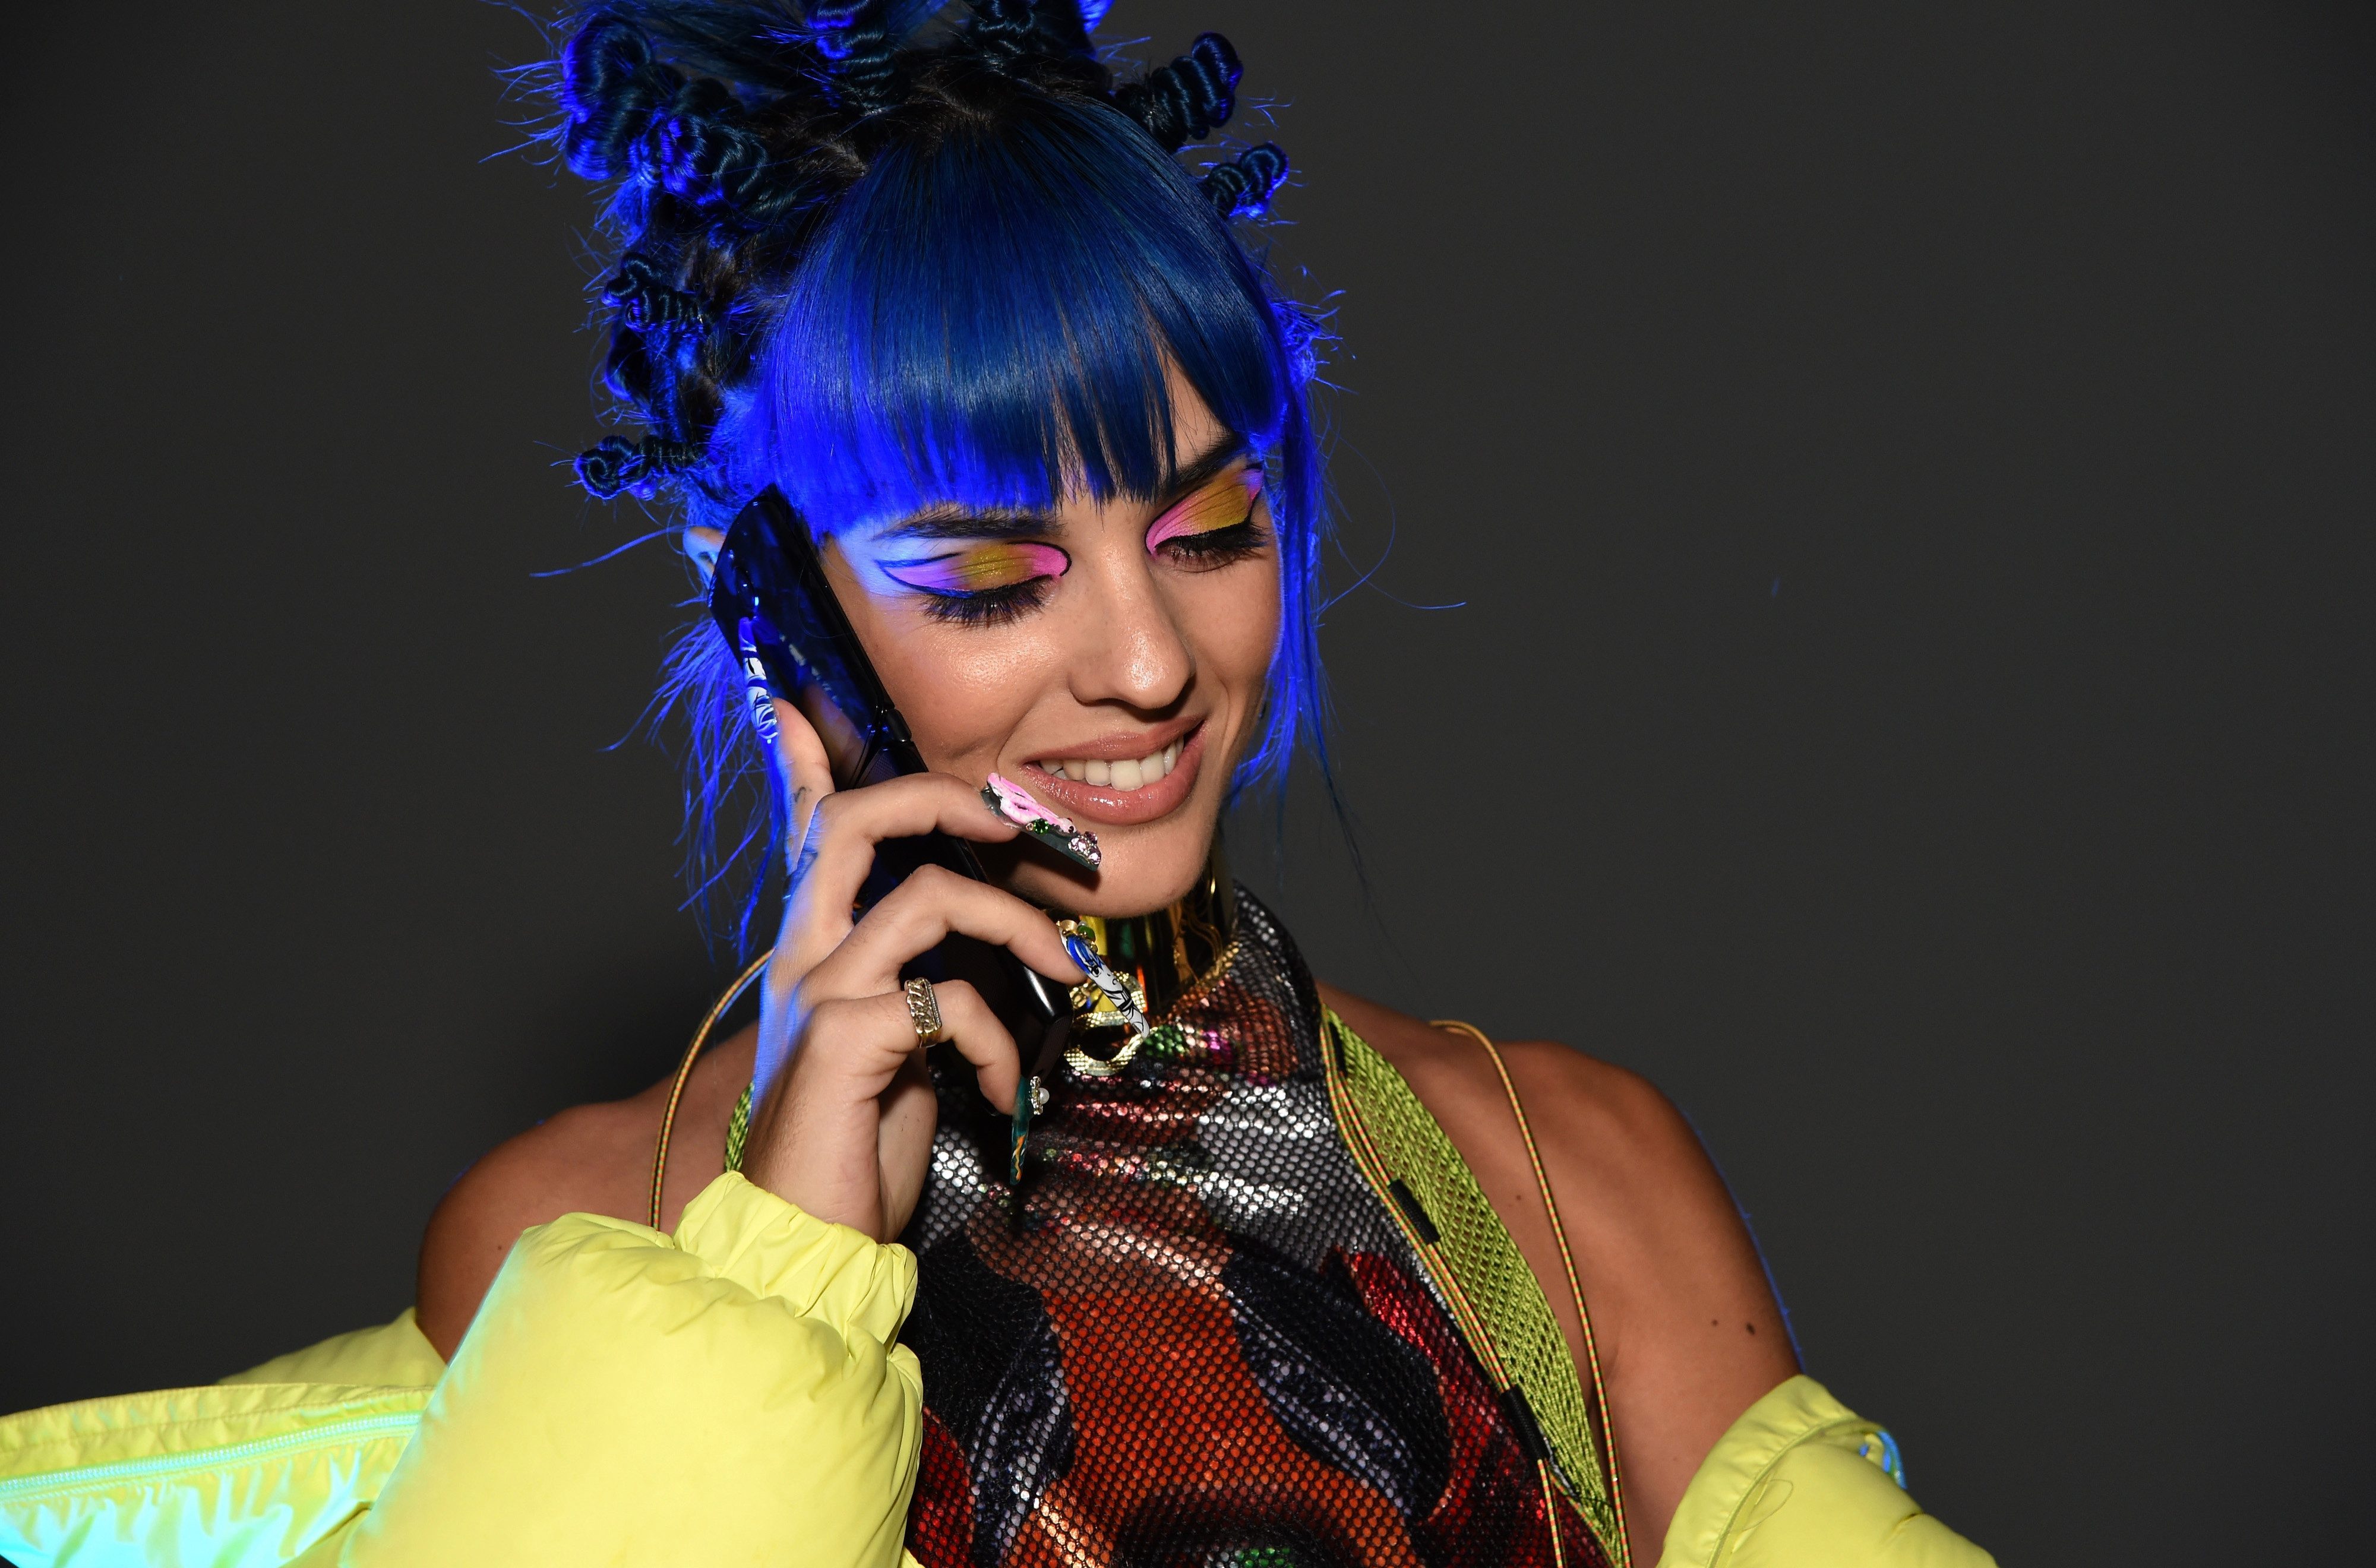   Người mẫu Sita Abellan tham dự lễ ra mắt Razr tại Los Angeles vào tháng 11 năm 2019